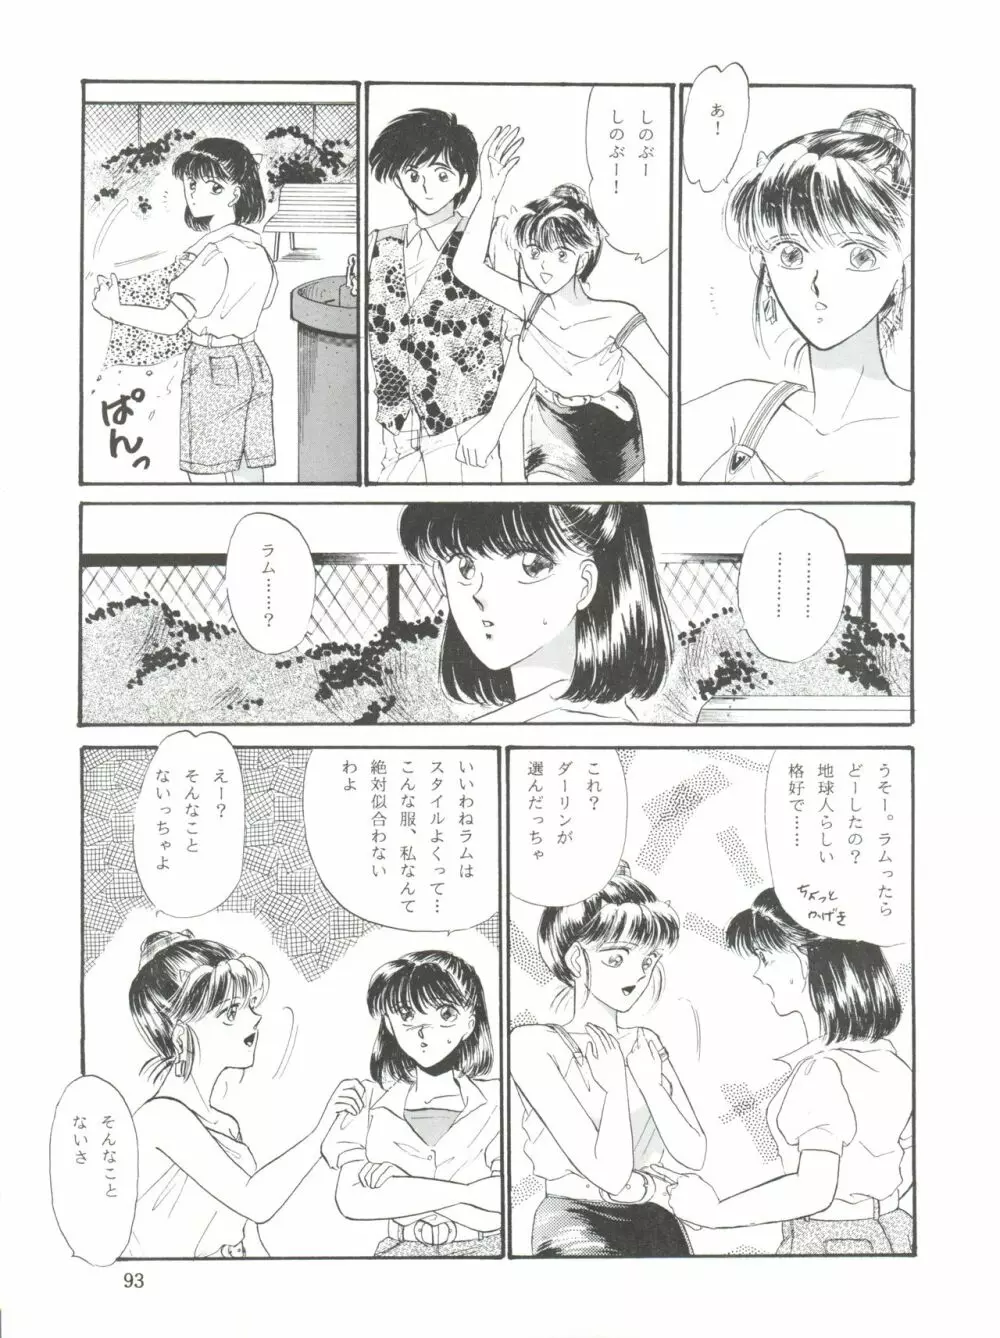 NANIWA-YA FINAL DRESS UP! - page93